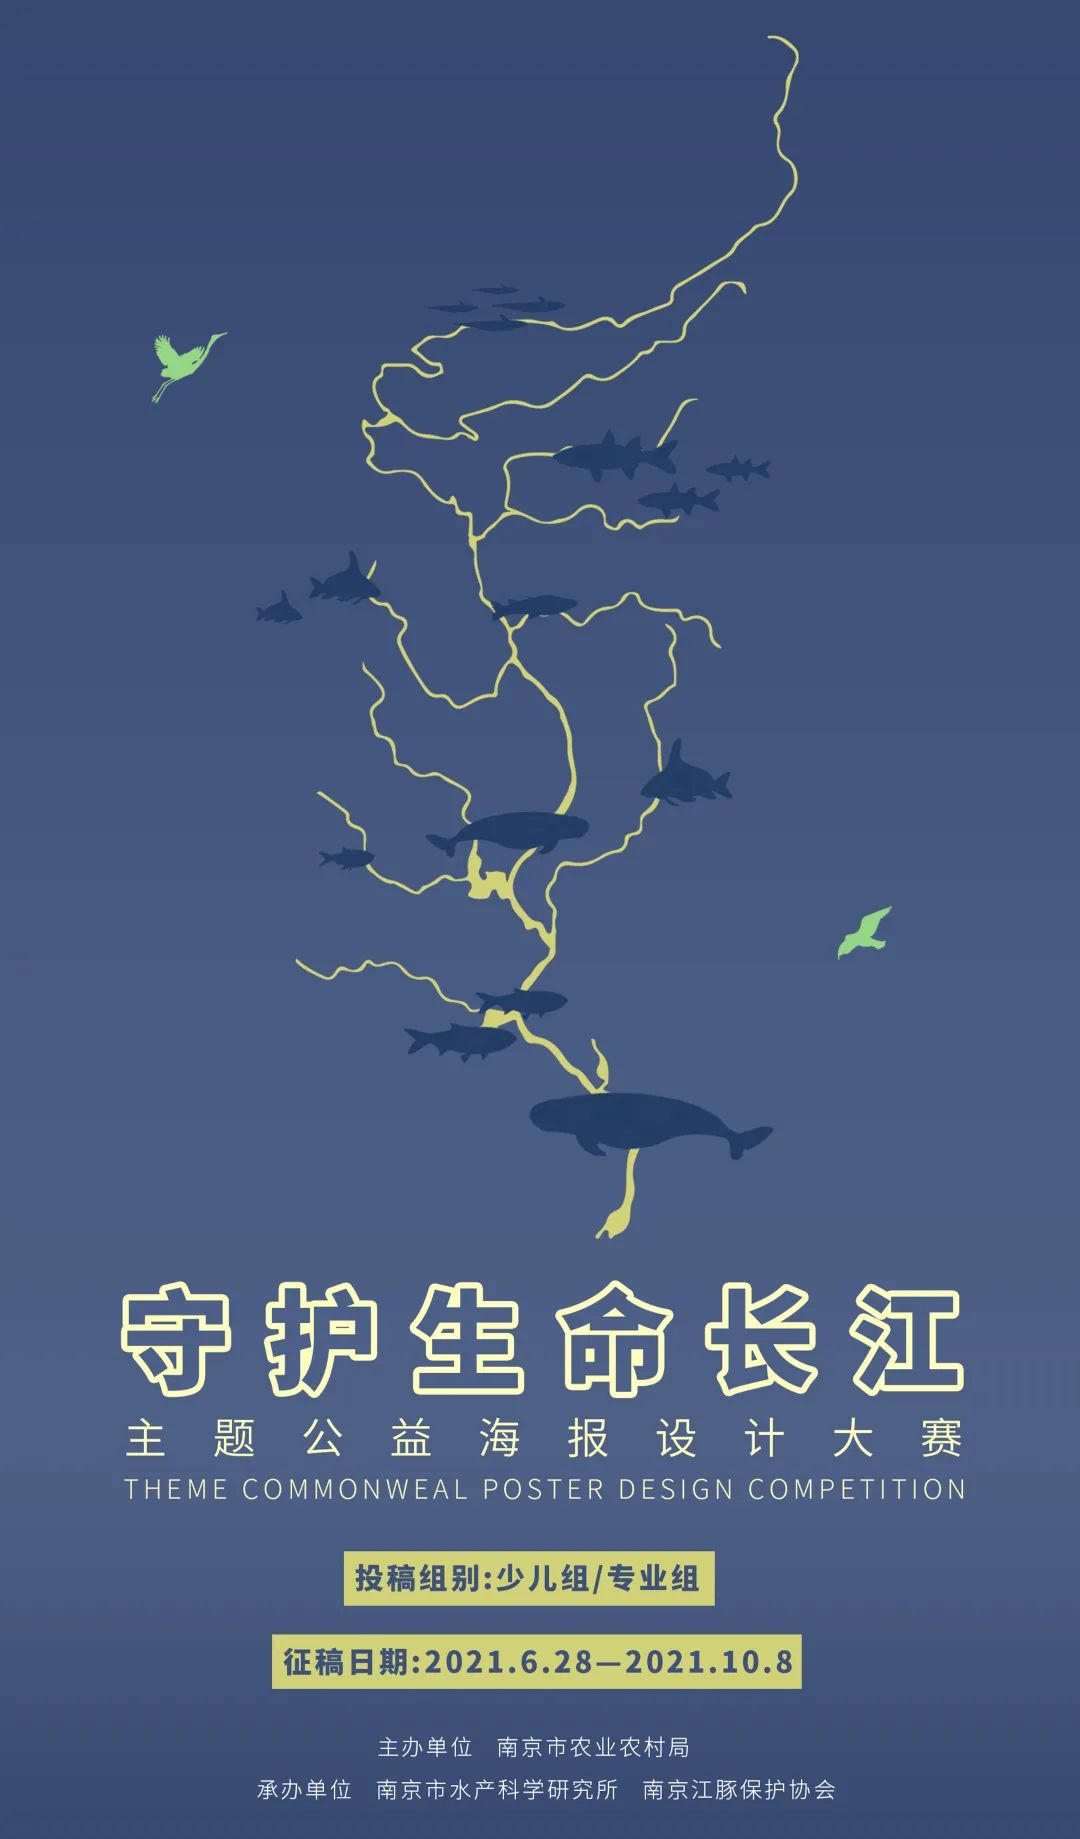 保护长江的宣传画图片